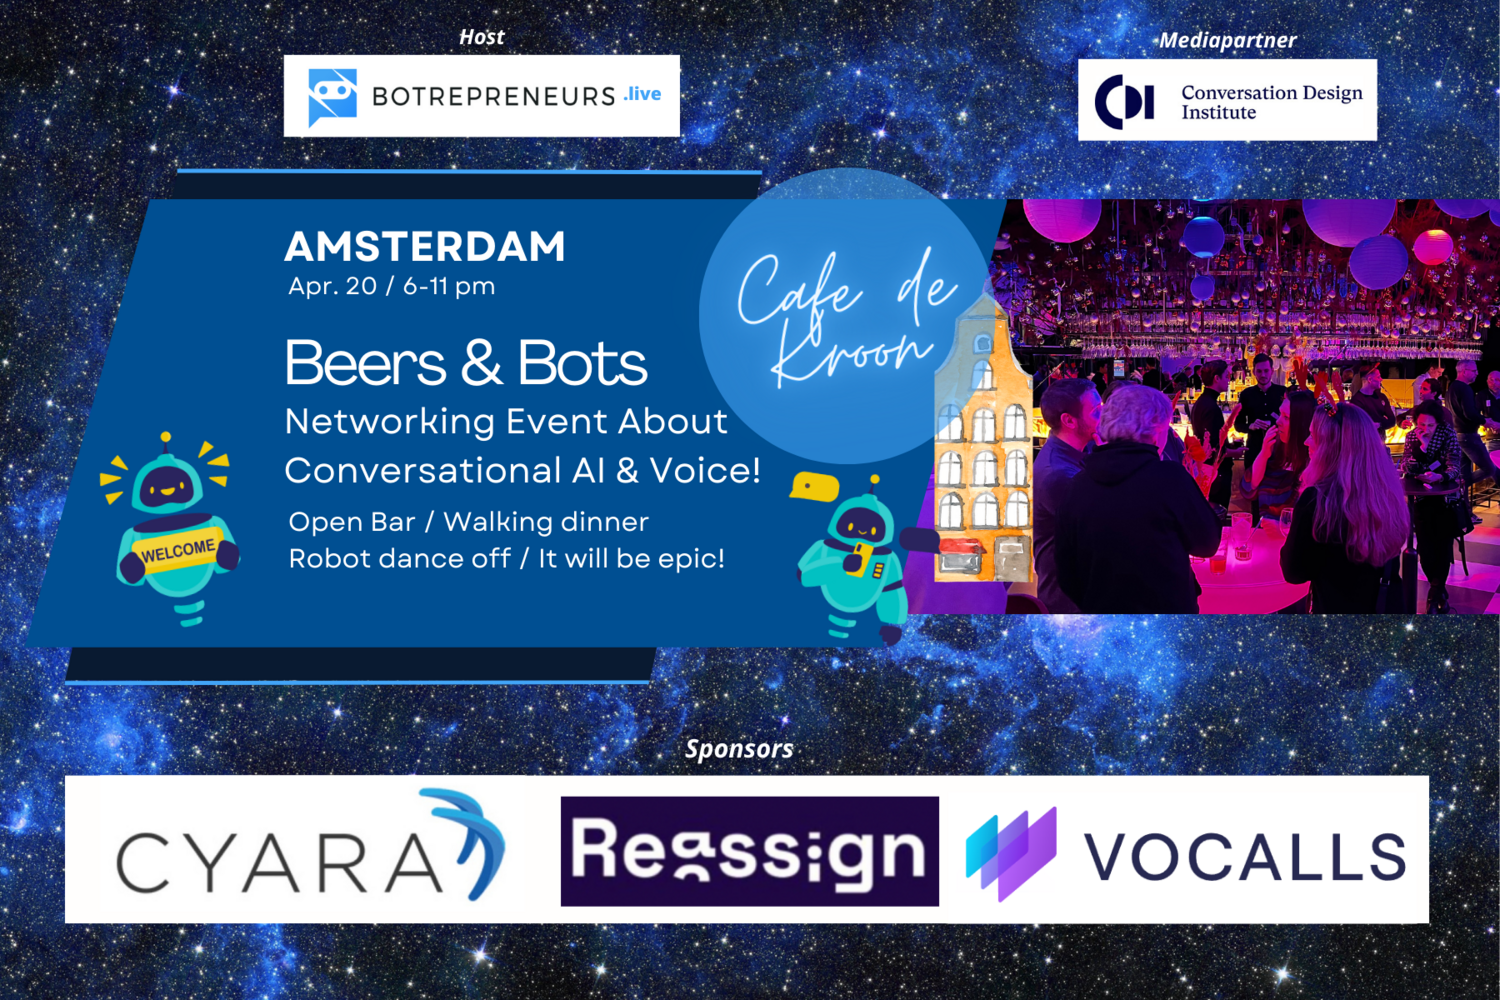 Beers & Bots Networking Event / Amsterdam / Venue: Café de Kroon / Apr 20 / 6-11 pm